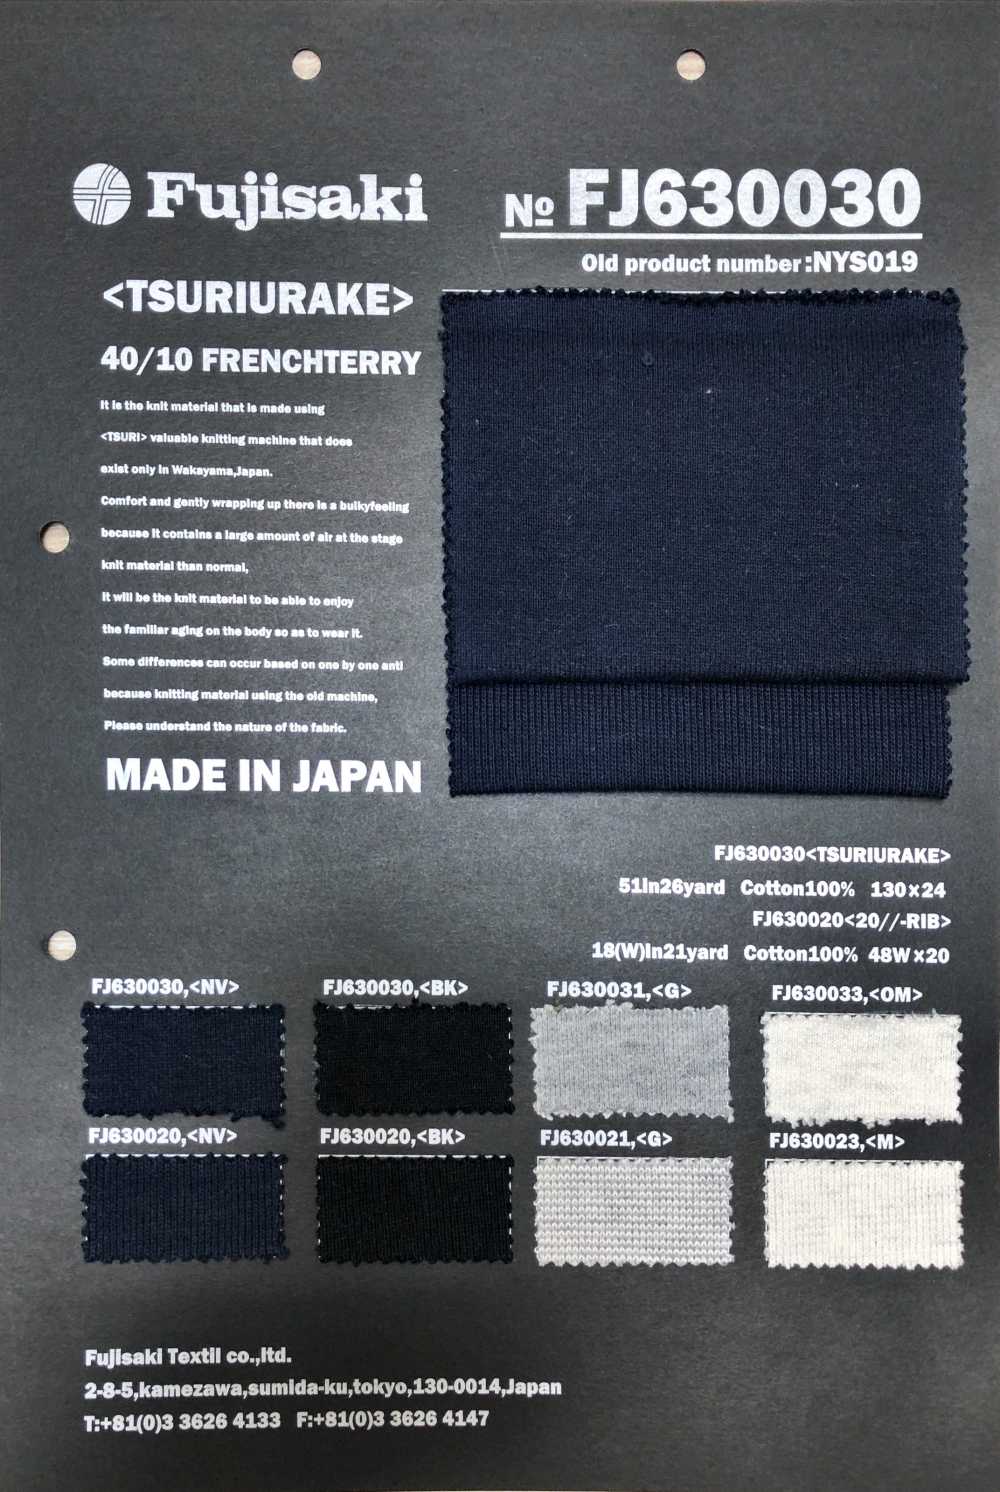 FJ630030 Lana Y Textil Para Coser[Fabrica Textil] Fujisaki Textile